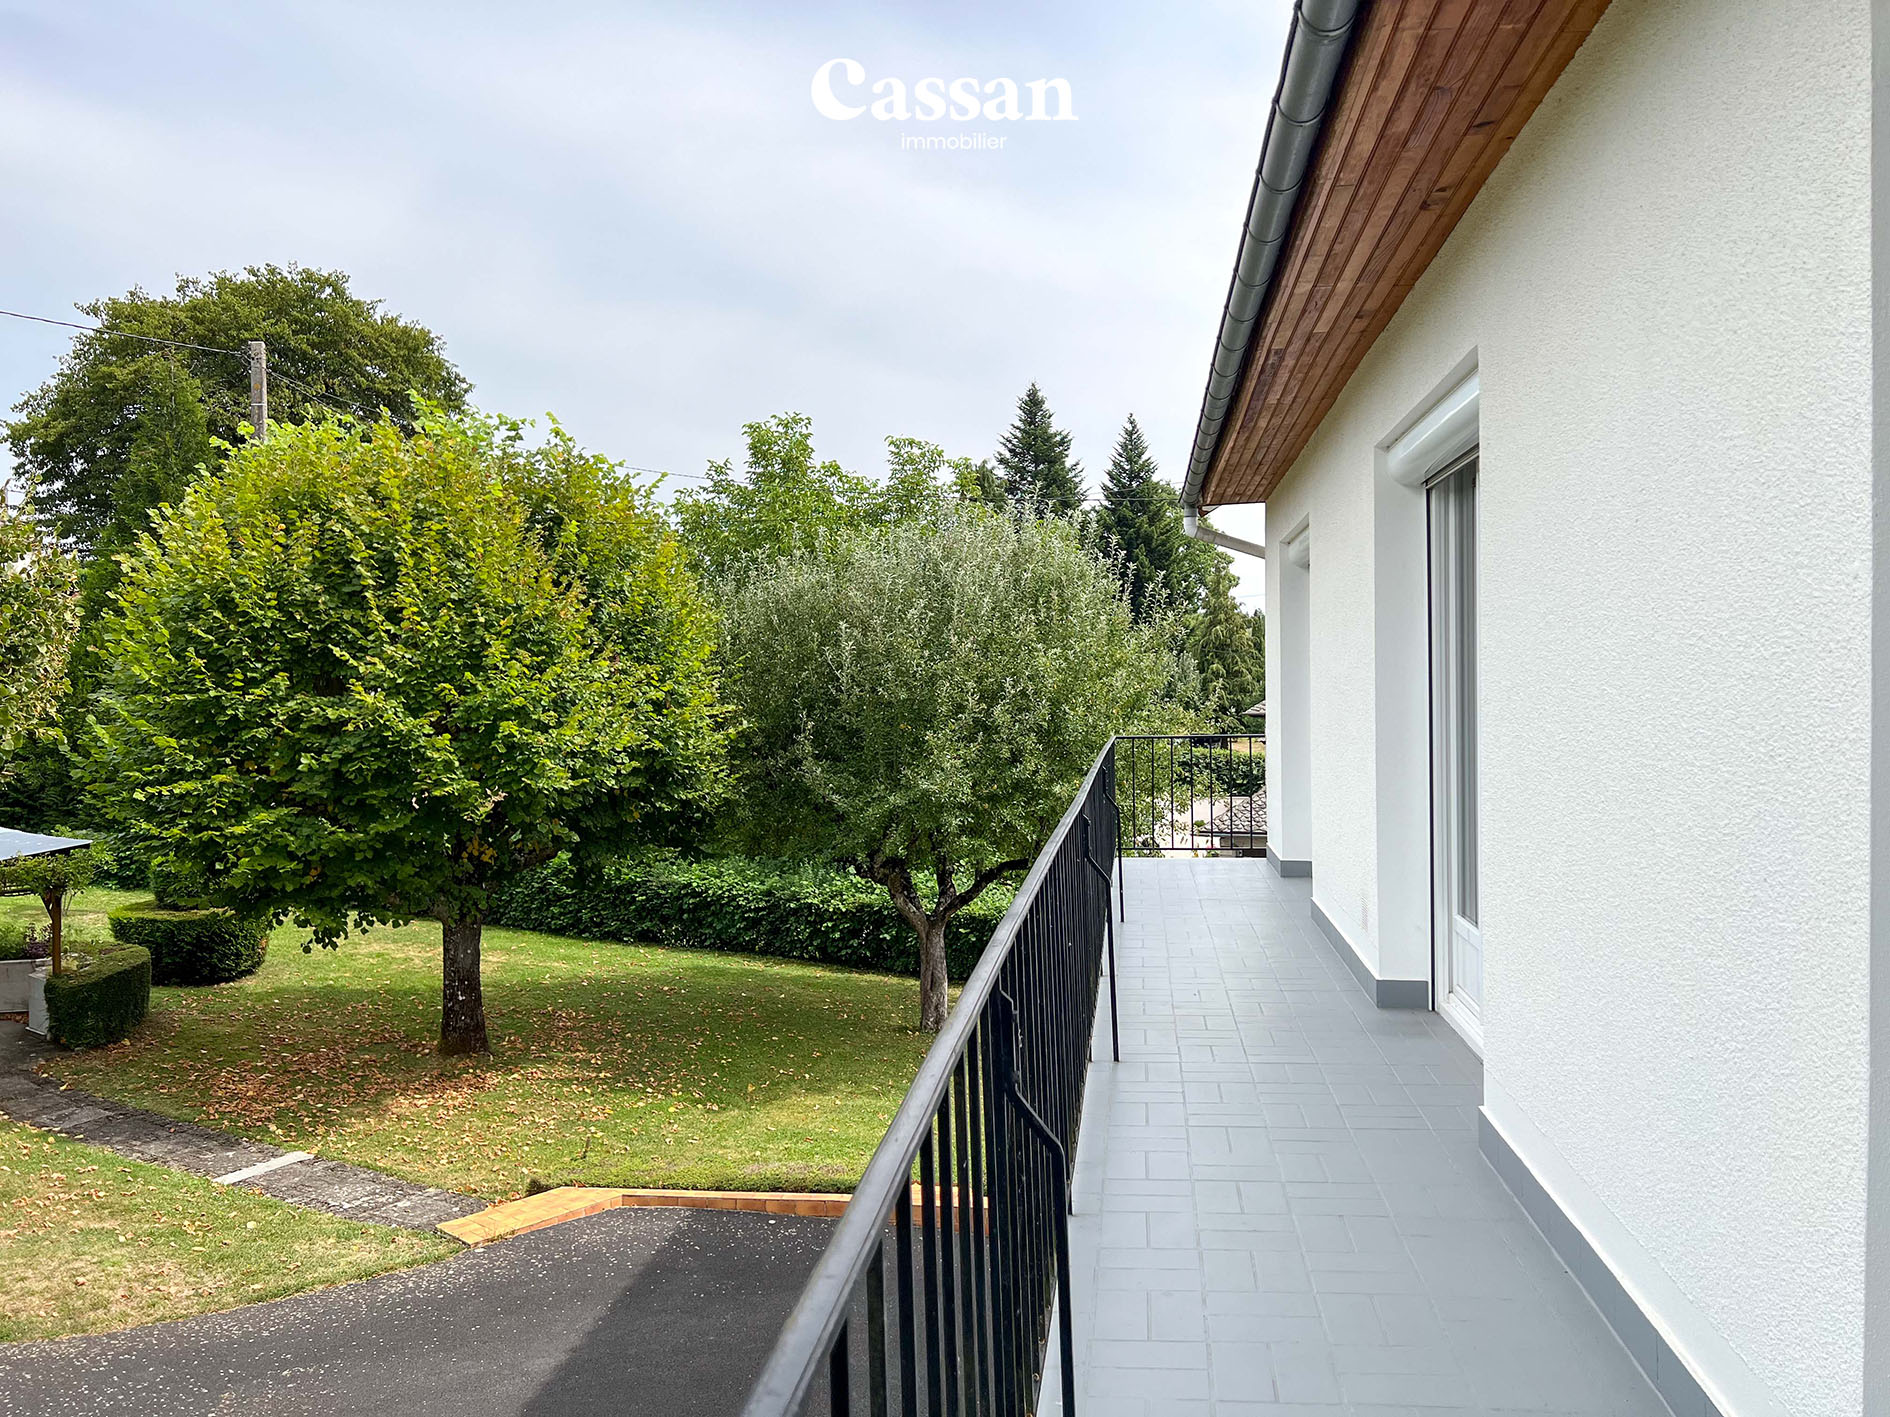 Balcon maison à vendre Sansac-de-Marmiesse Cassan immobilier